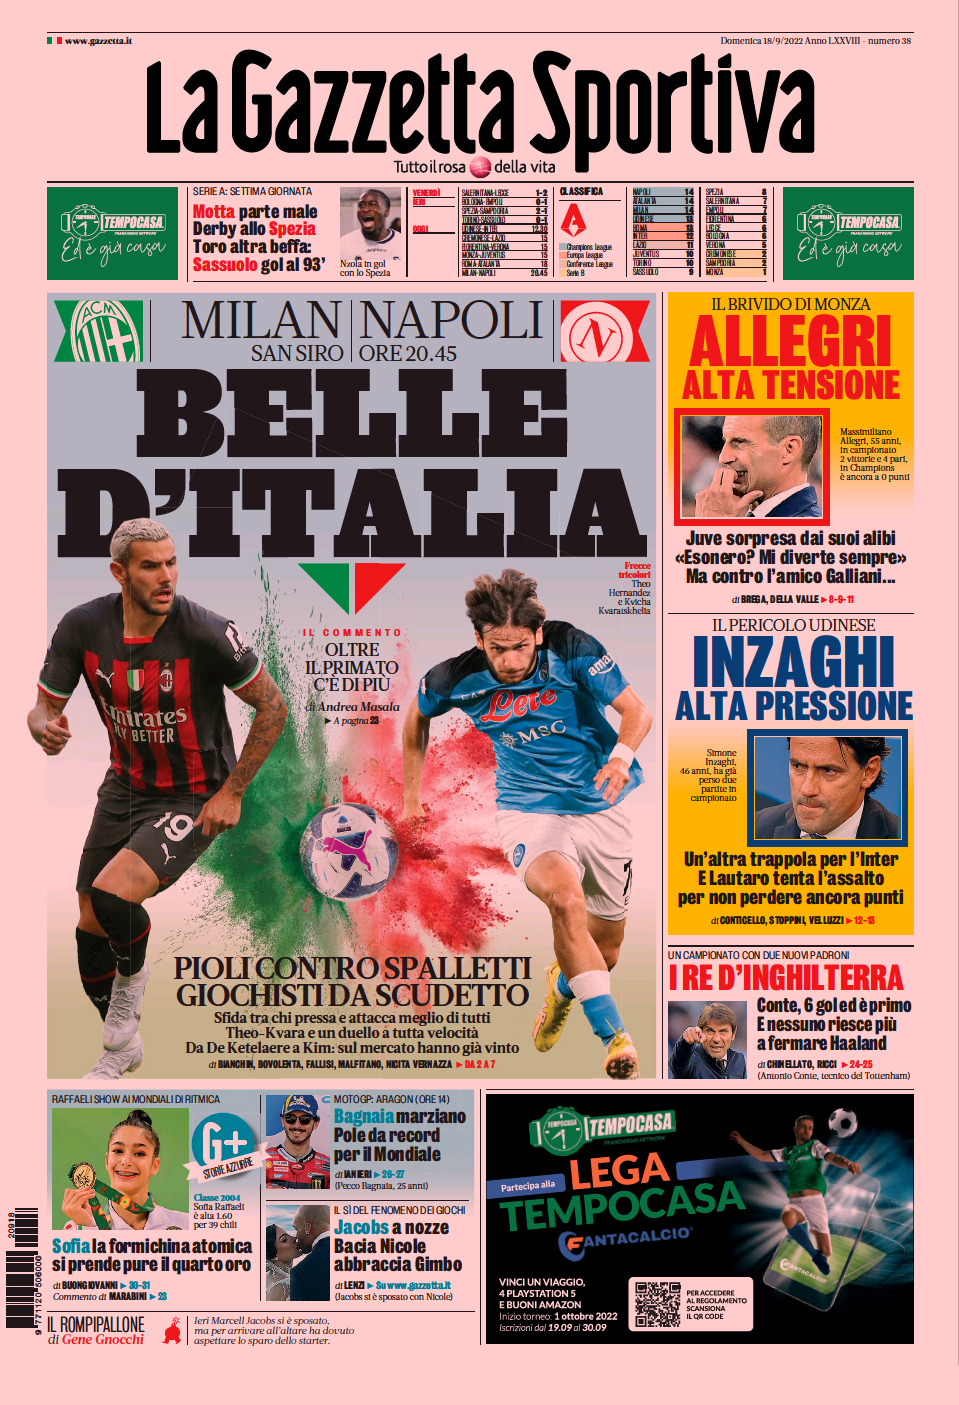 Скудетто, акт первый. Заголовки Gazzetta, TuttoSport и Corriere за 18 сентября